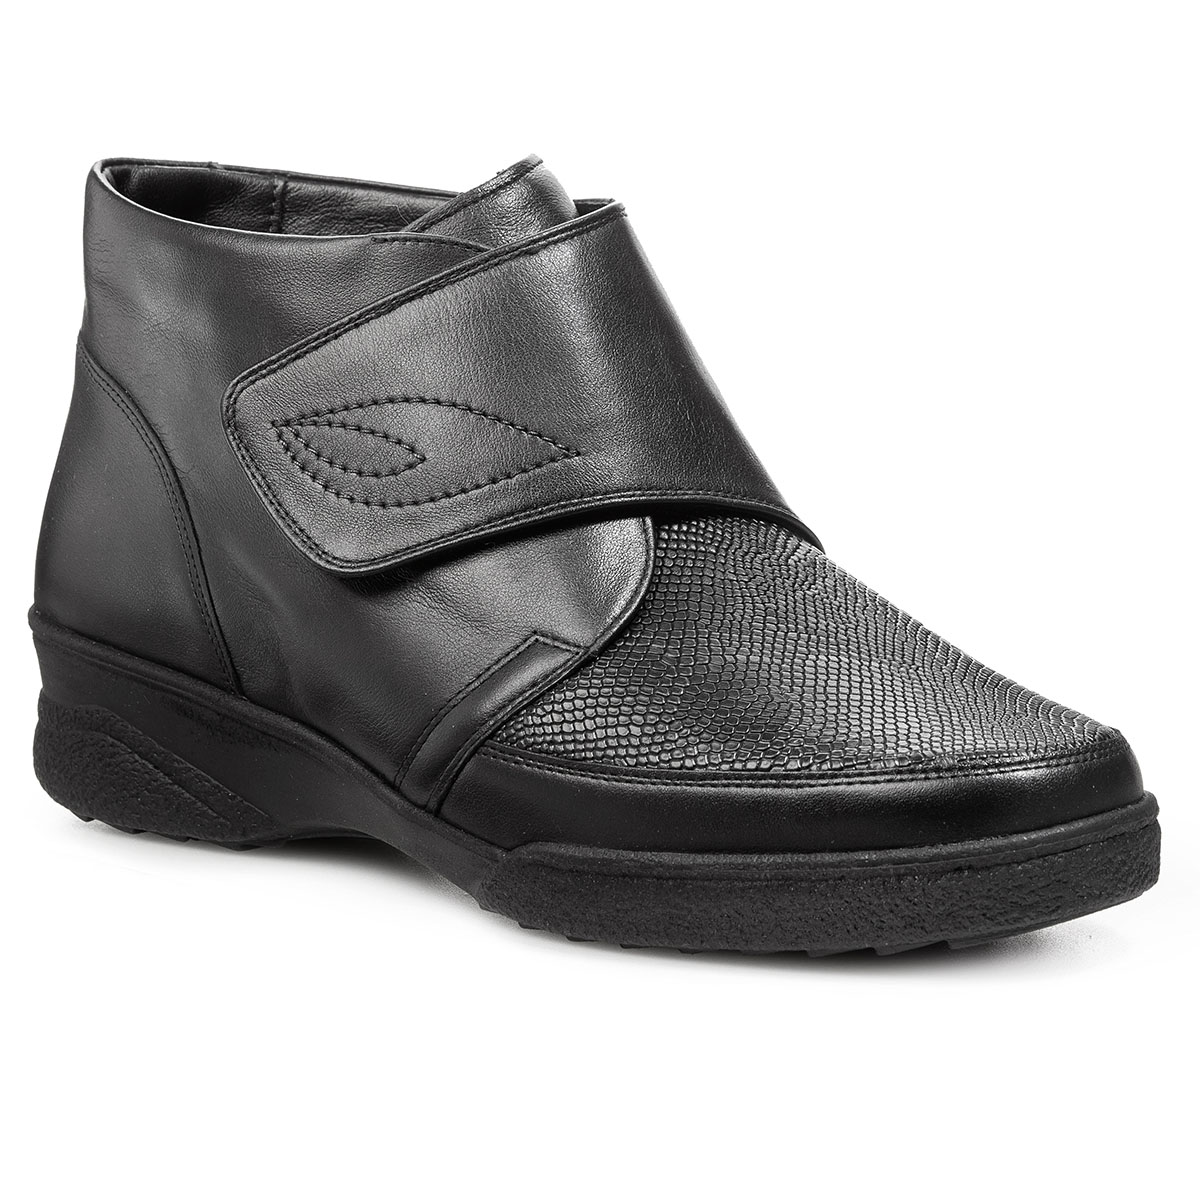 Женские ботинки Solidus Hedda Stiefel (Solicare Soft) черные женские высокие ботинки на шнуровке kinga stiefel коричневые